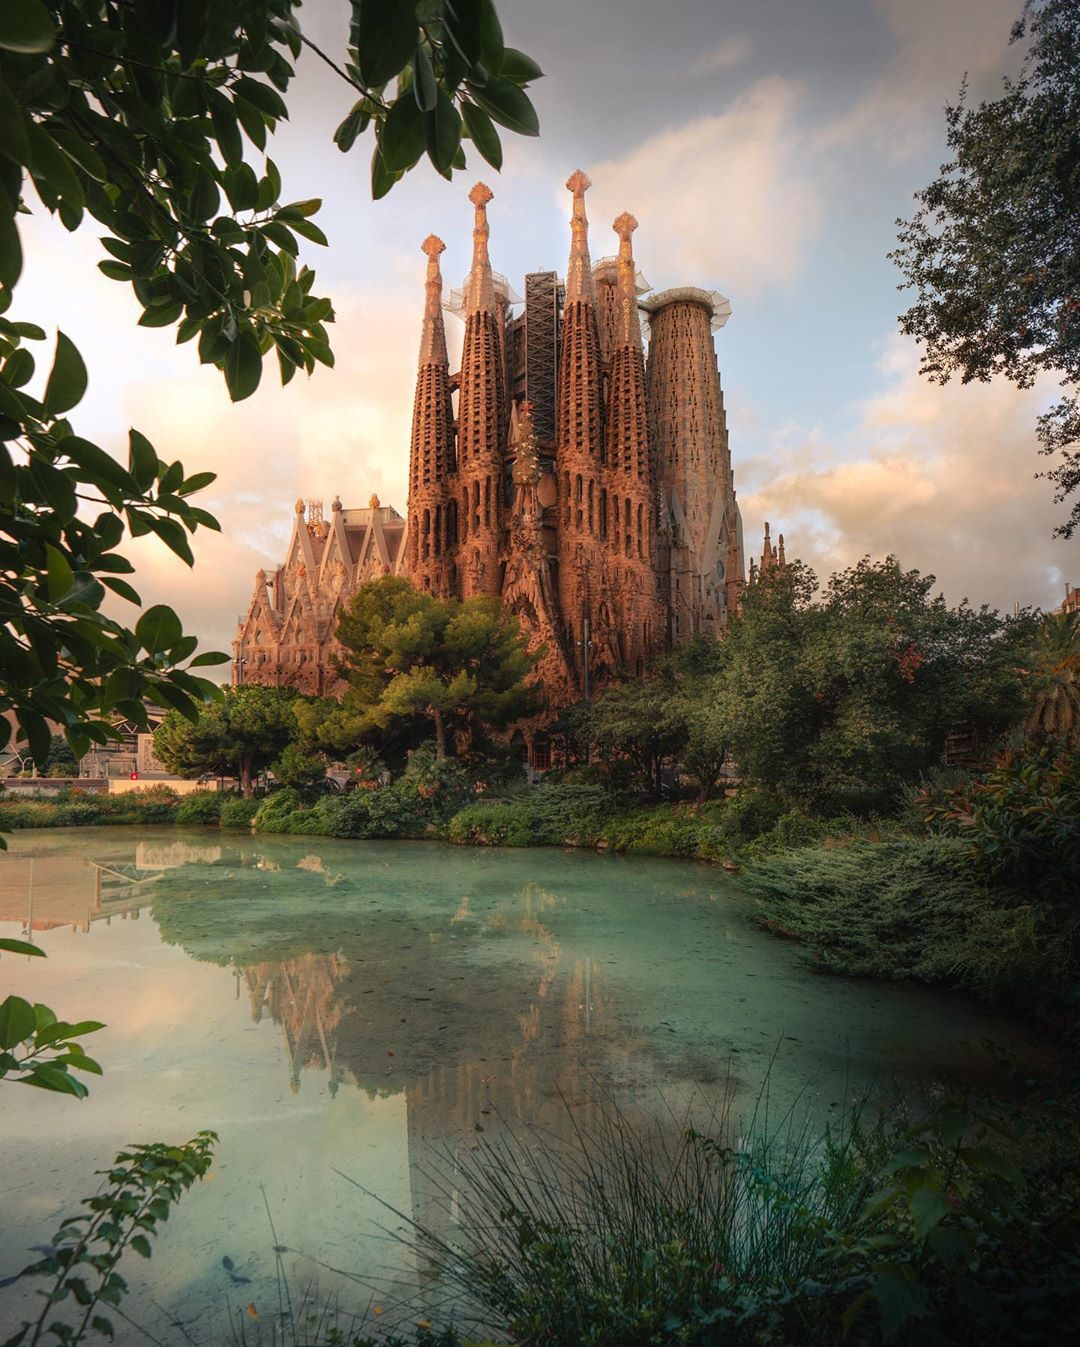 La Sagrada Familia By Antoni Gaudi